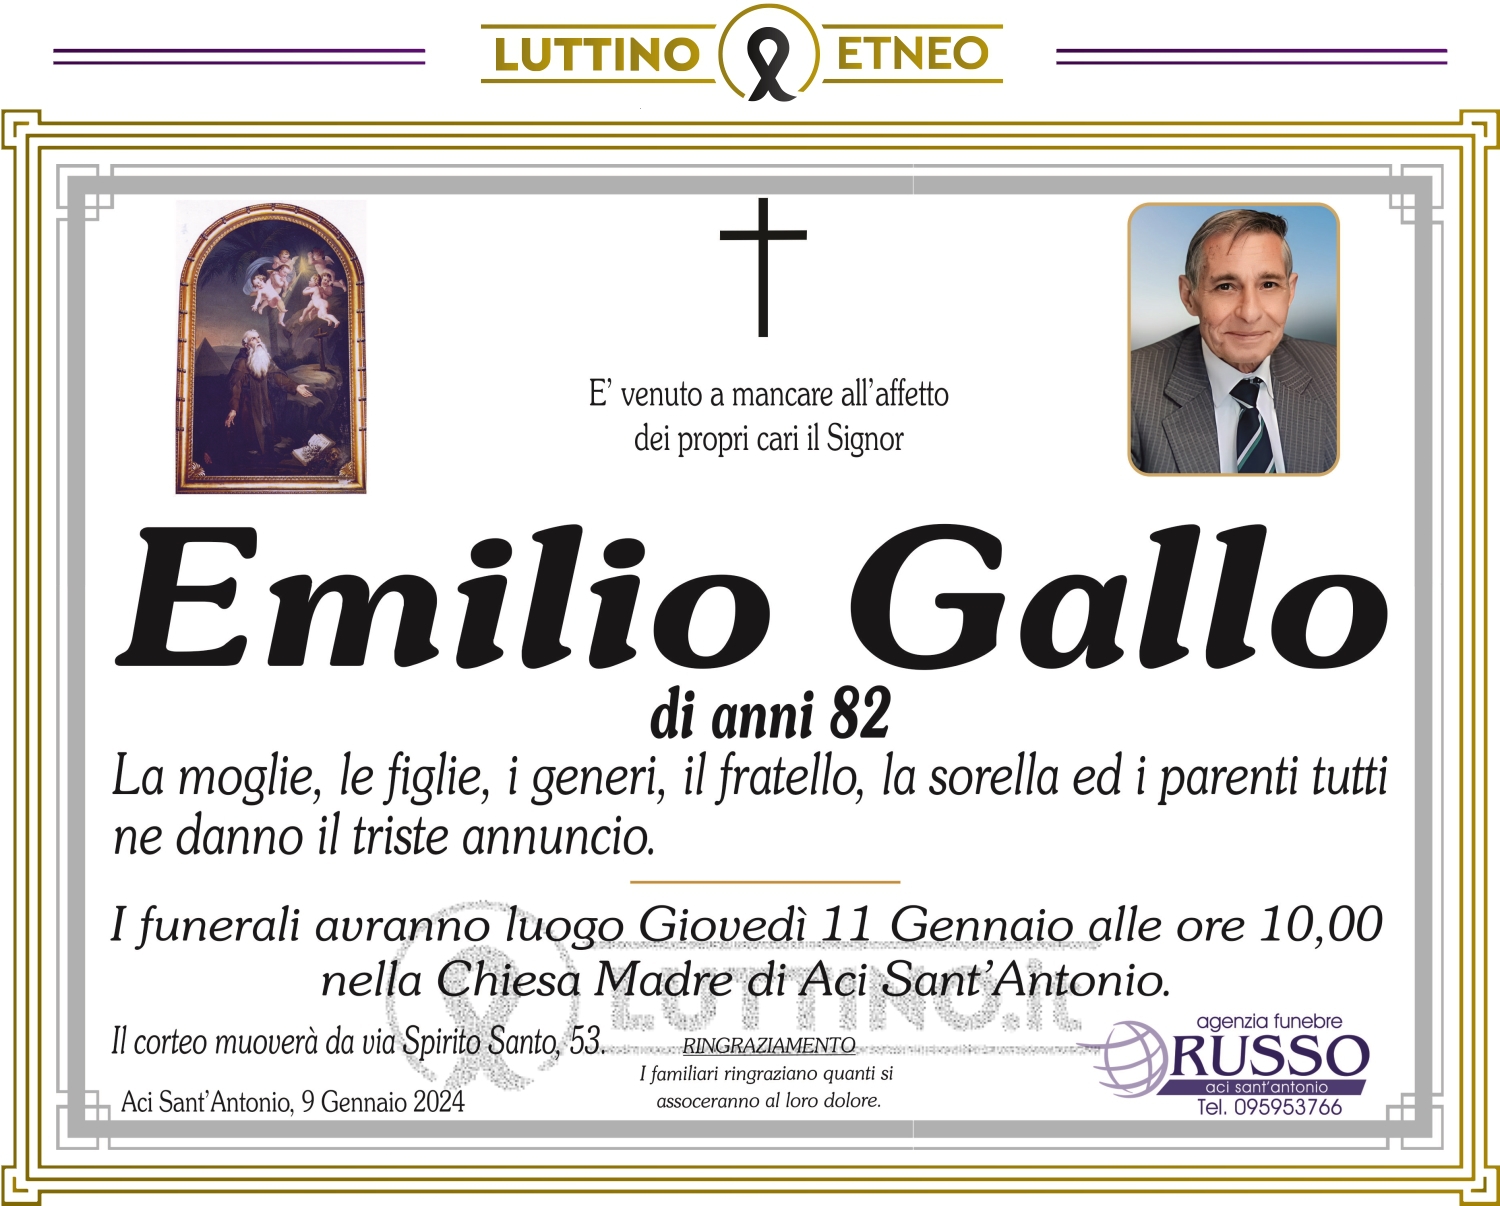 Emilio Gallo